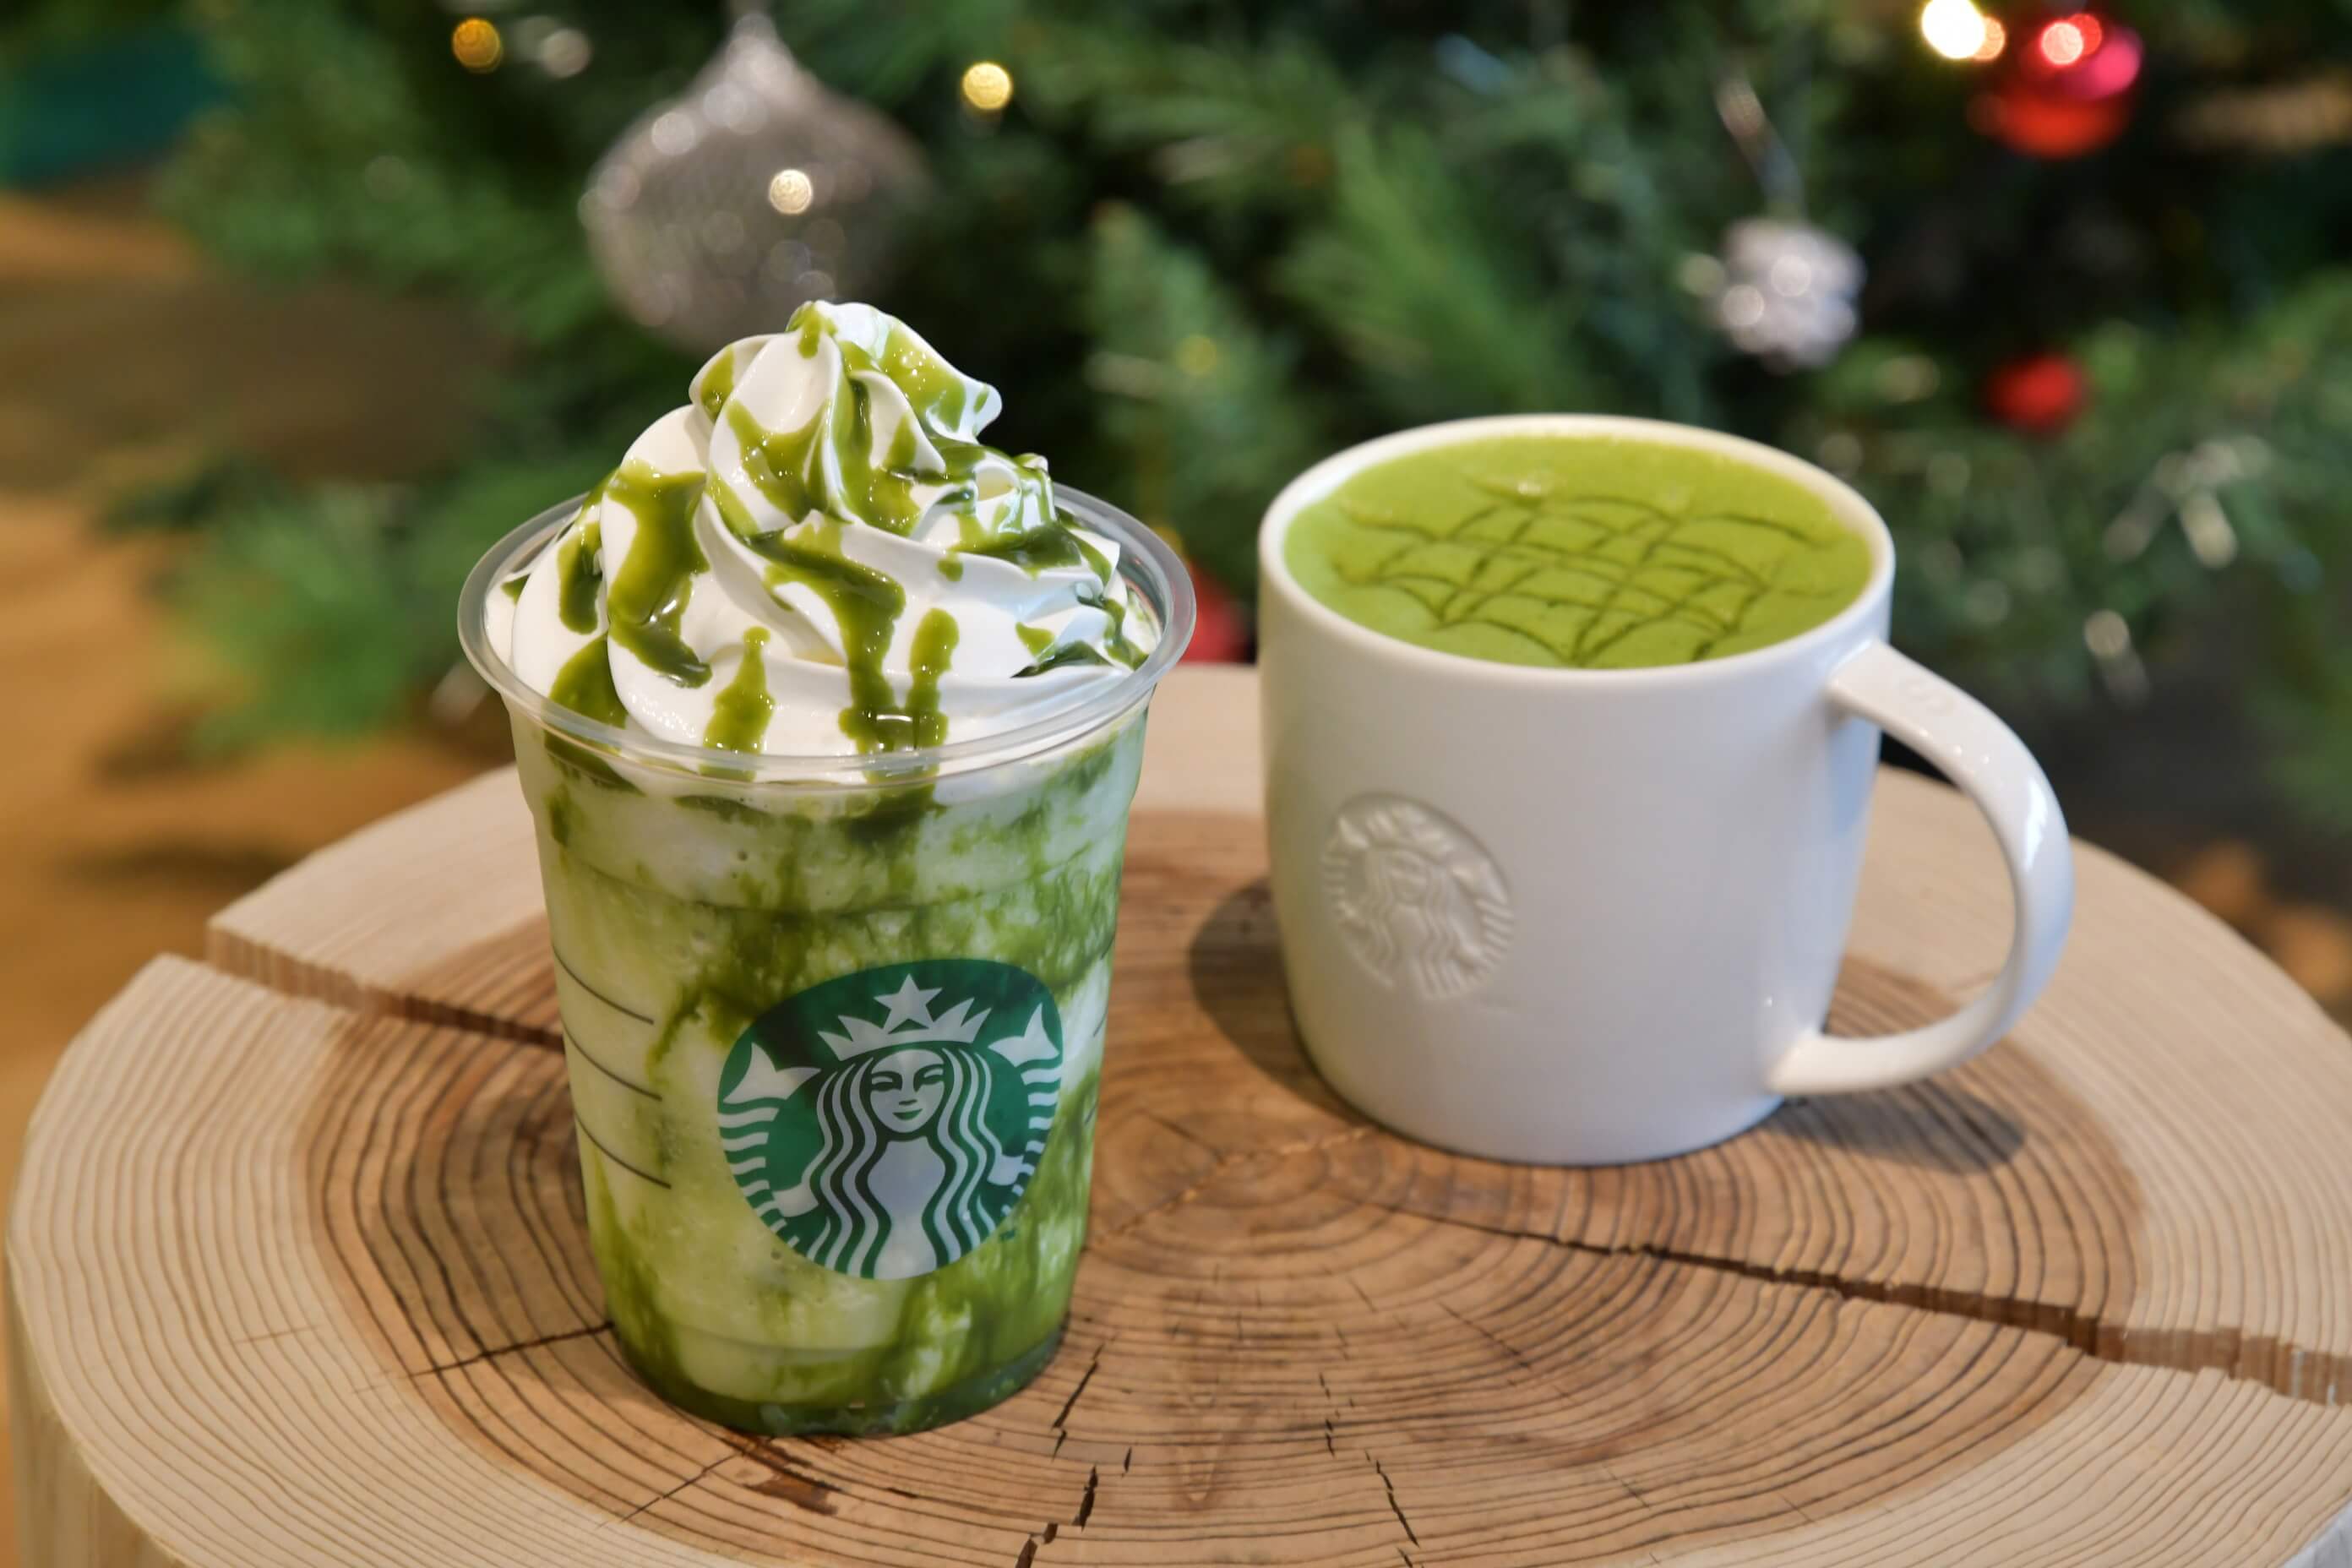 スターバックス コーヒー ジャパン Starbucks coffee matcha 抹茶 ホワイト チョコレート フラペチーノ(R) 2